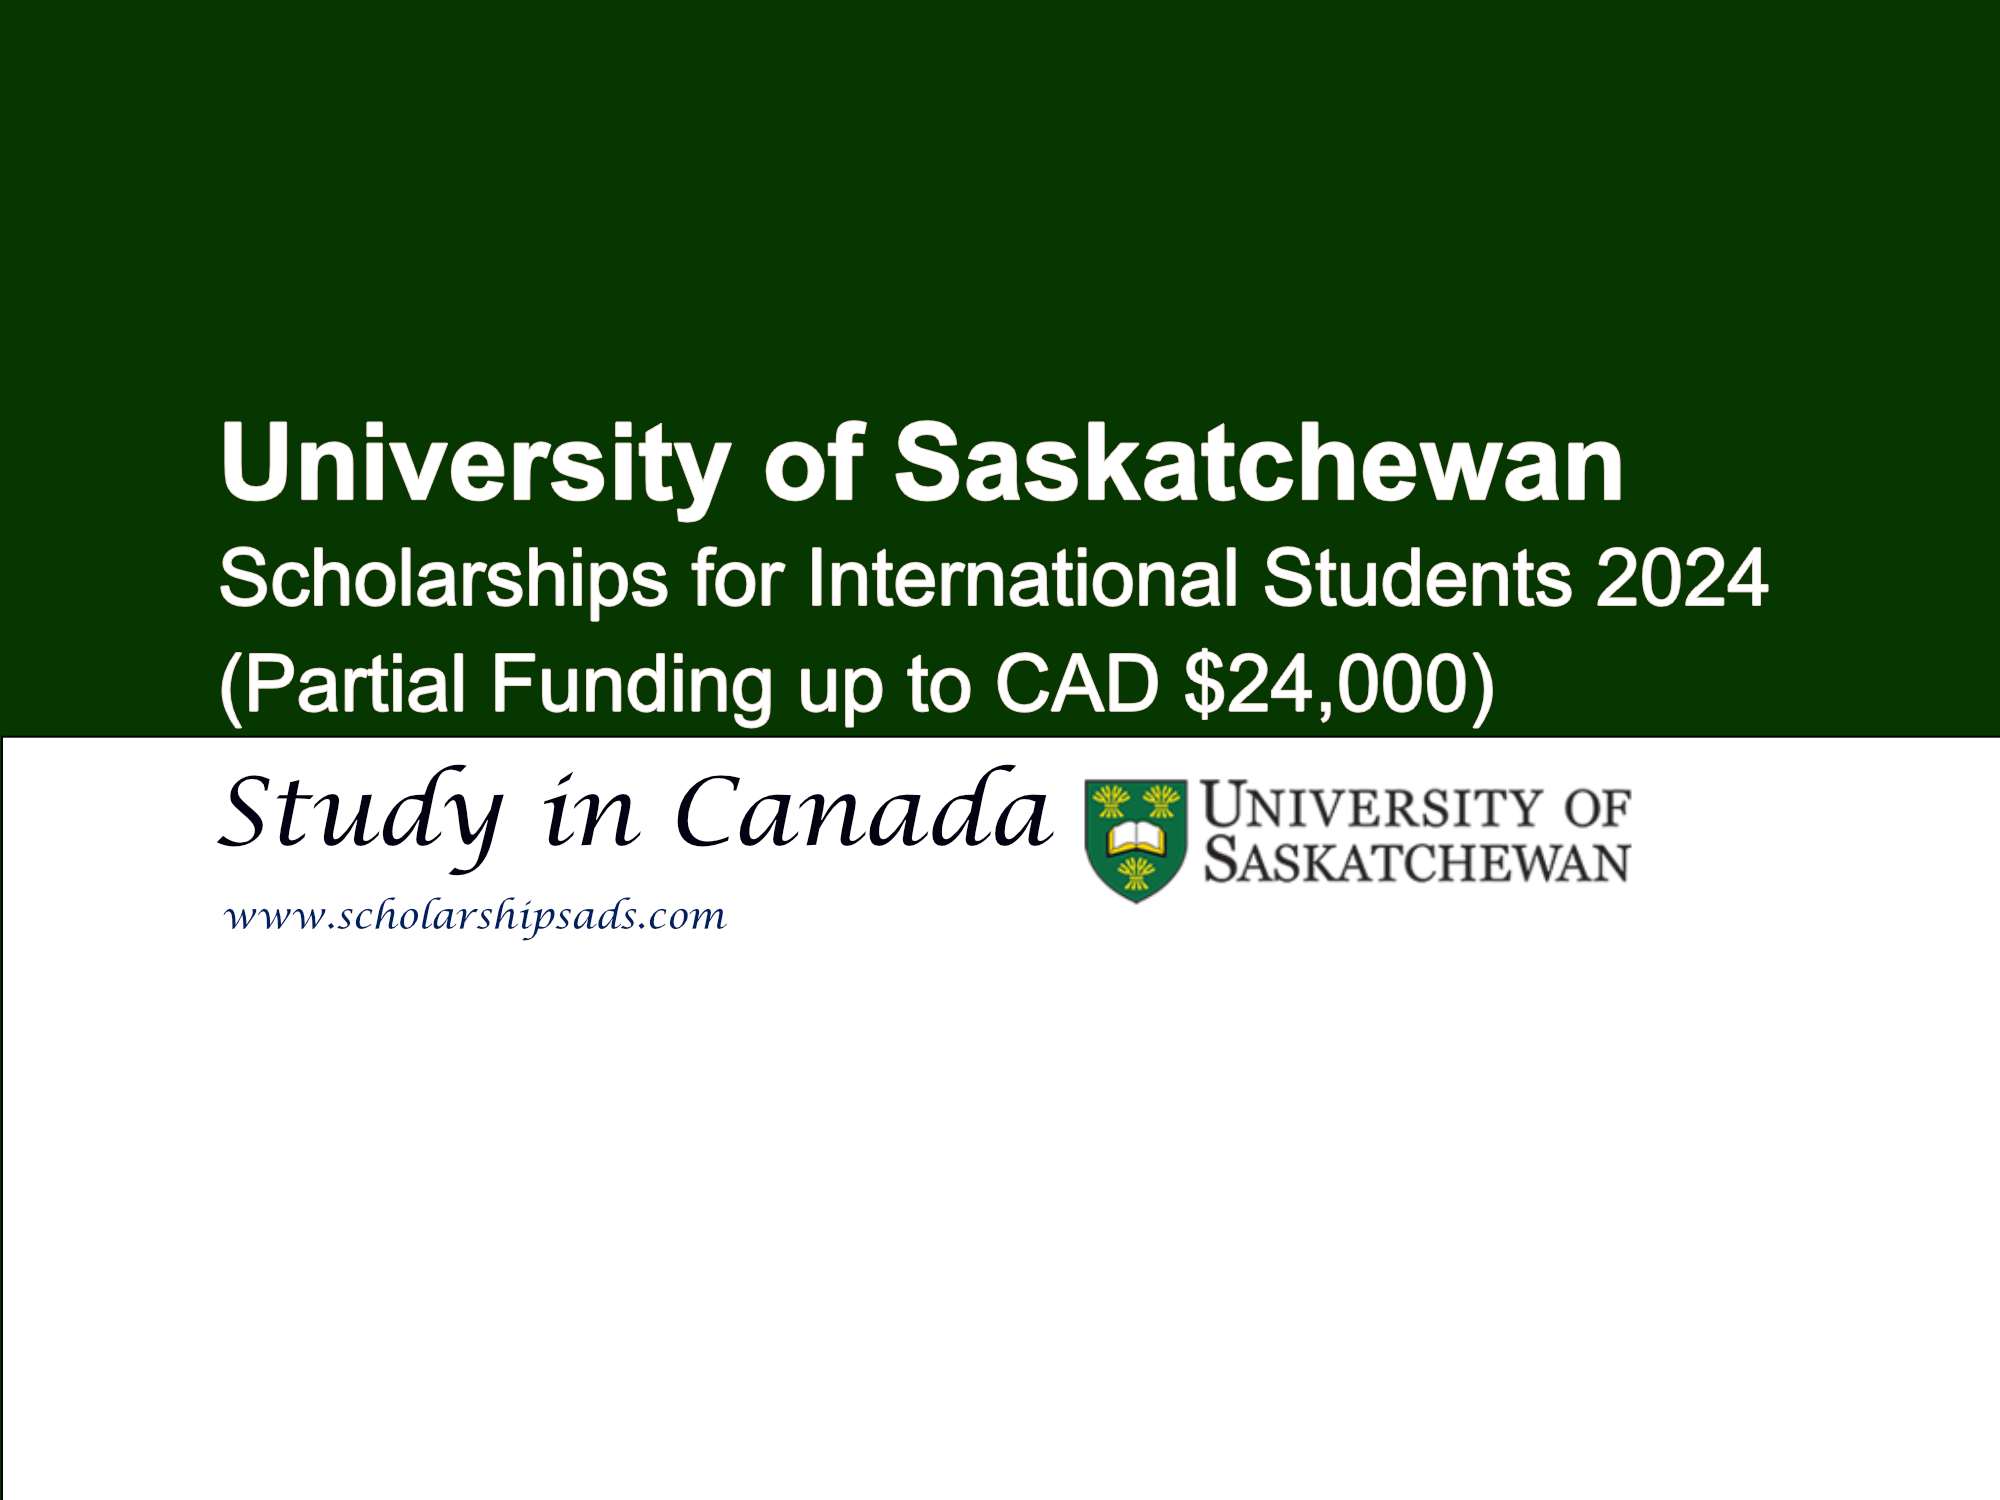 University of Saskatchewan Scholarships 2024 for International Students